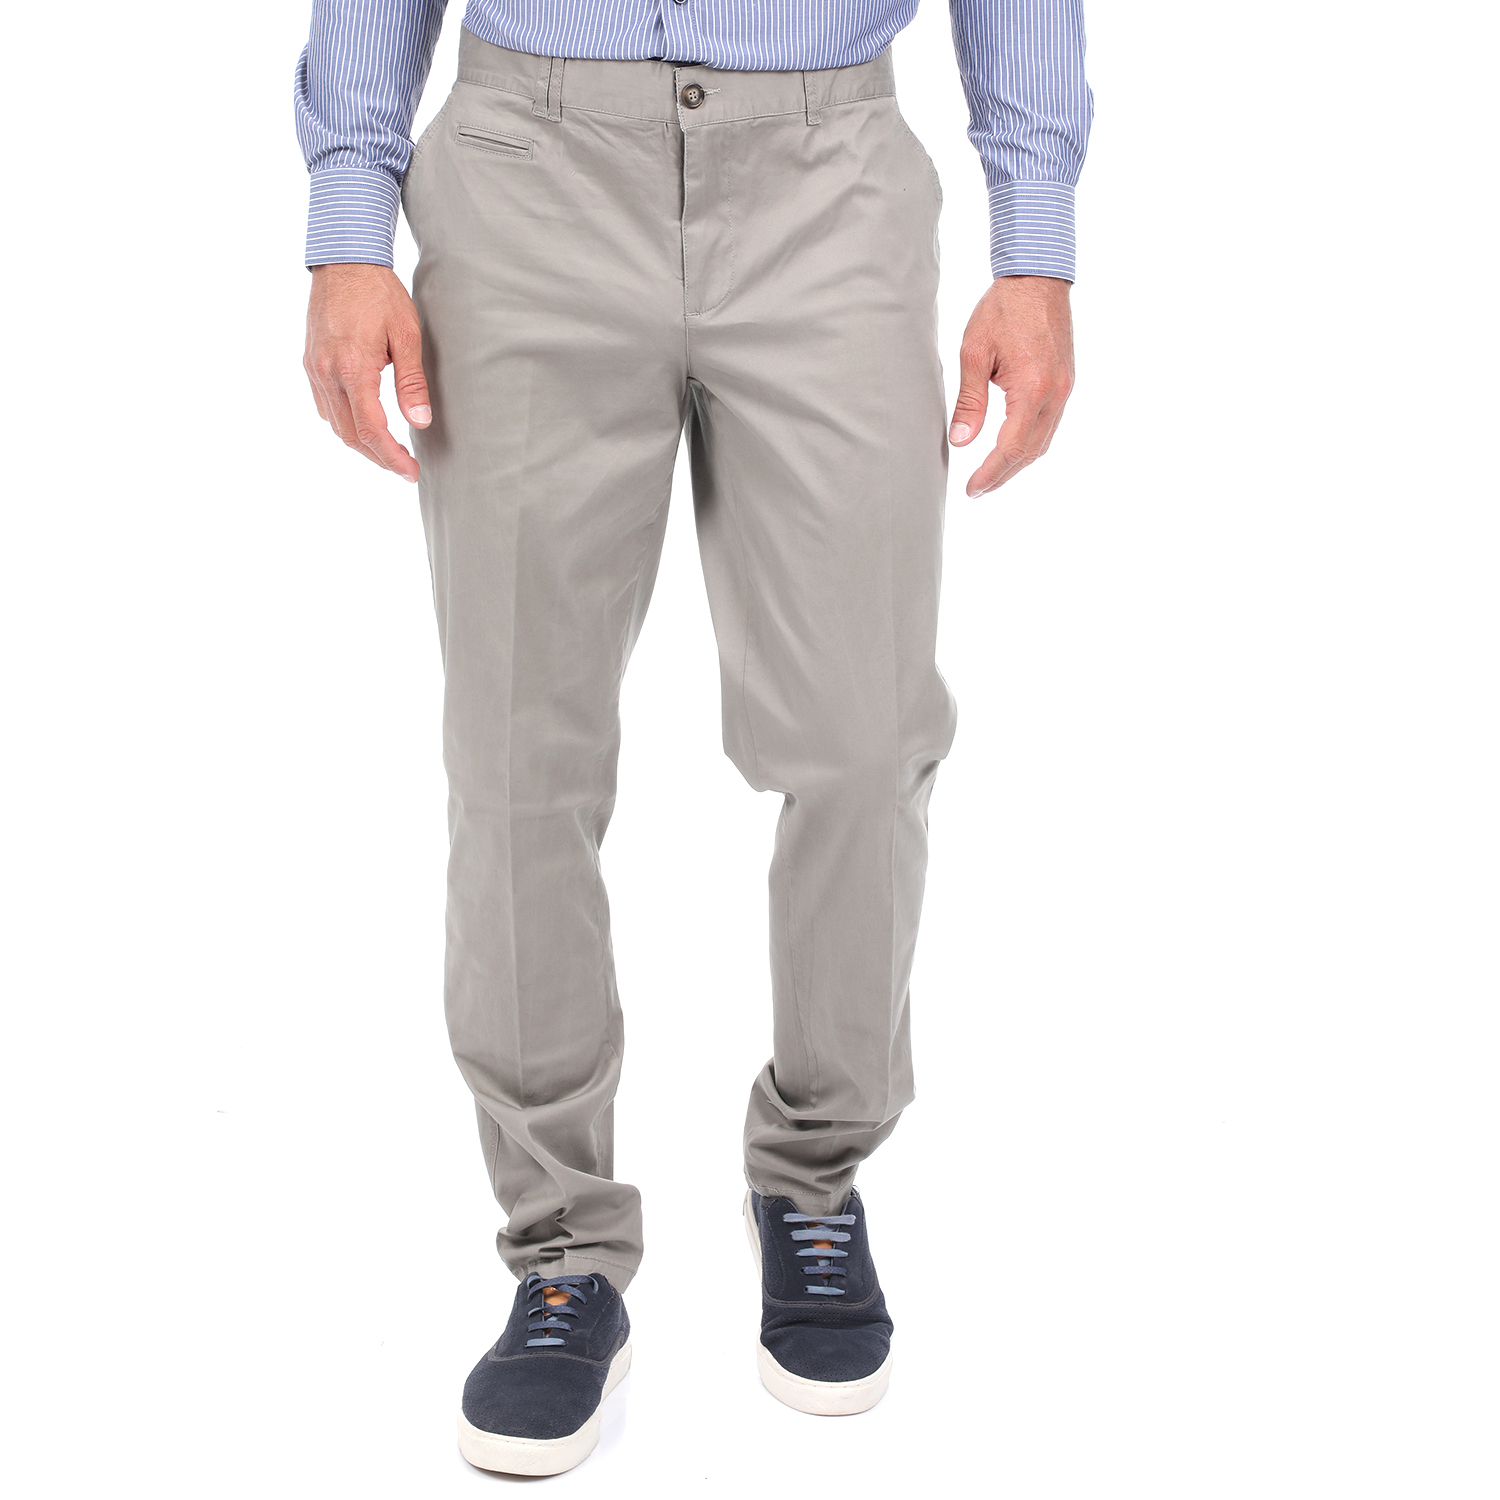 Ανδρικά/Ρούχα/Παντελόνια/Chinos MARTIN & CO - Ανδρικό chino παντελόνι MARTIN & CO SLIM χακί